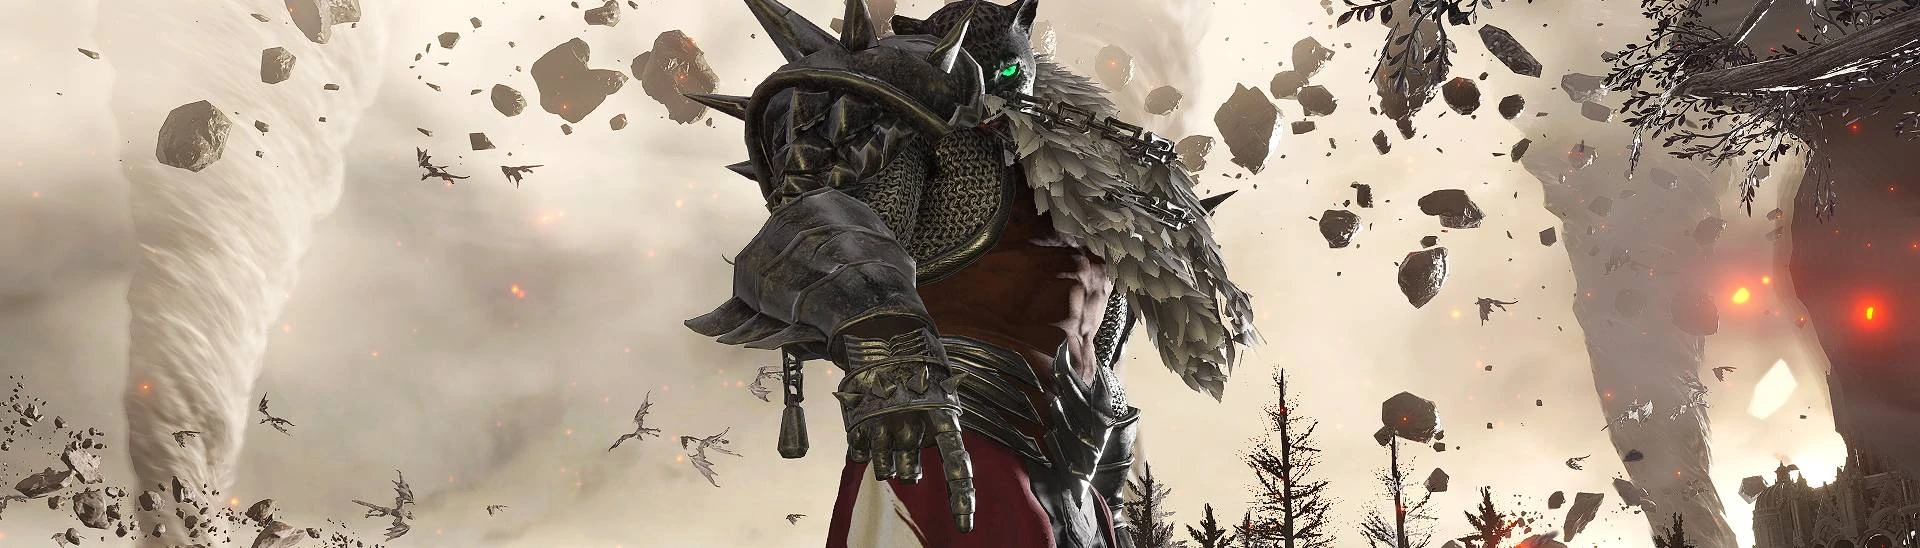 Armor King II, Wiki Tekken